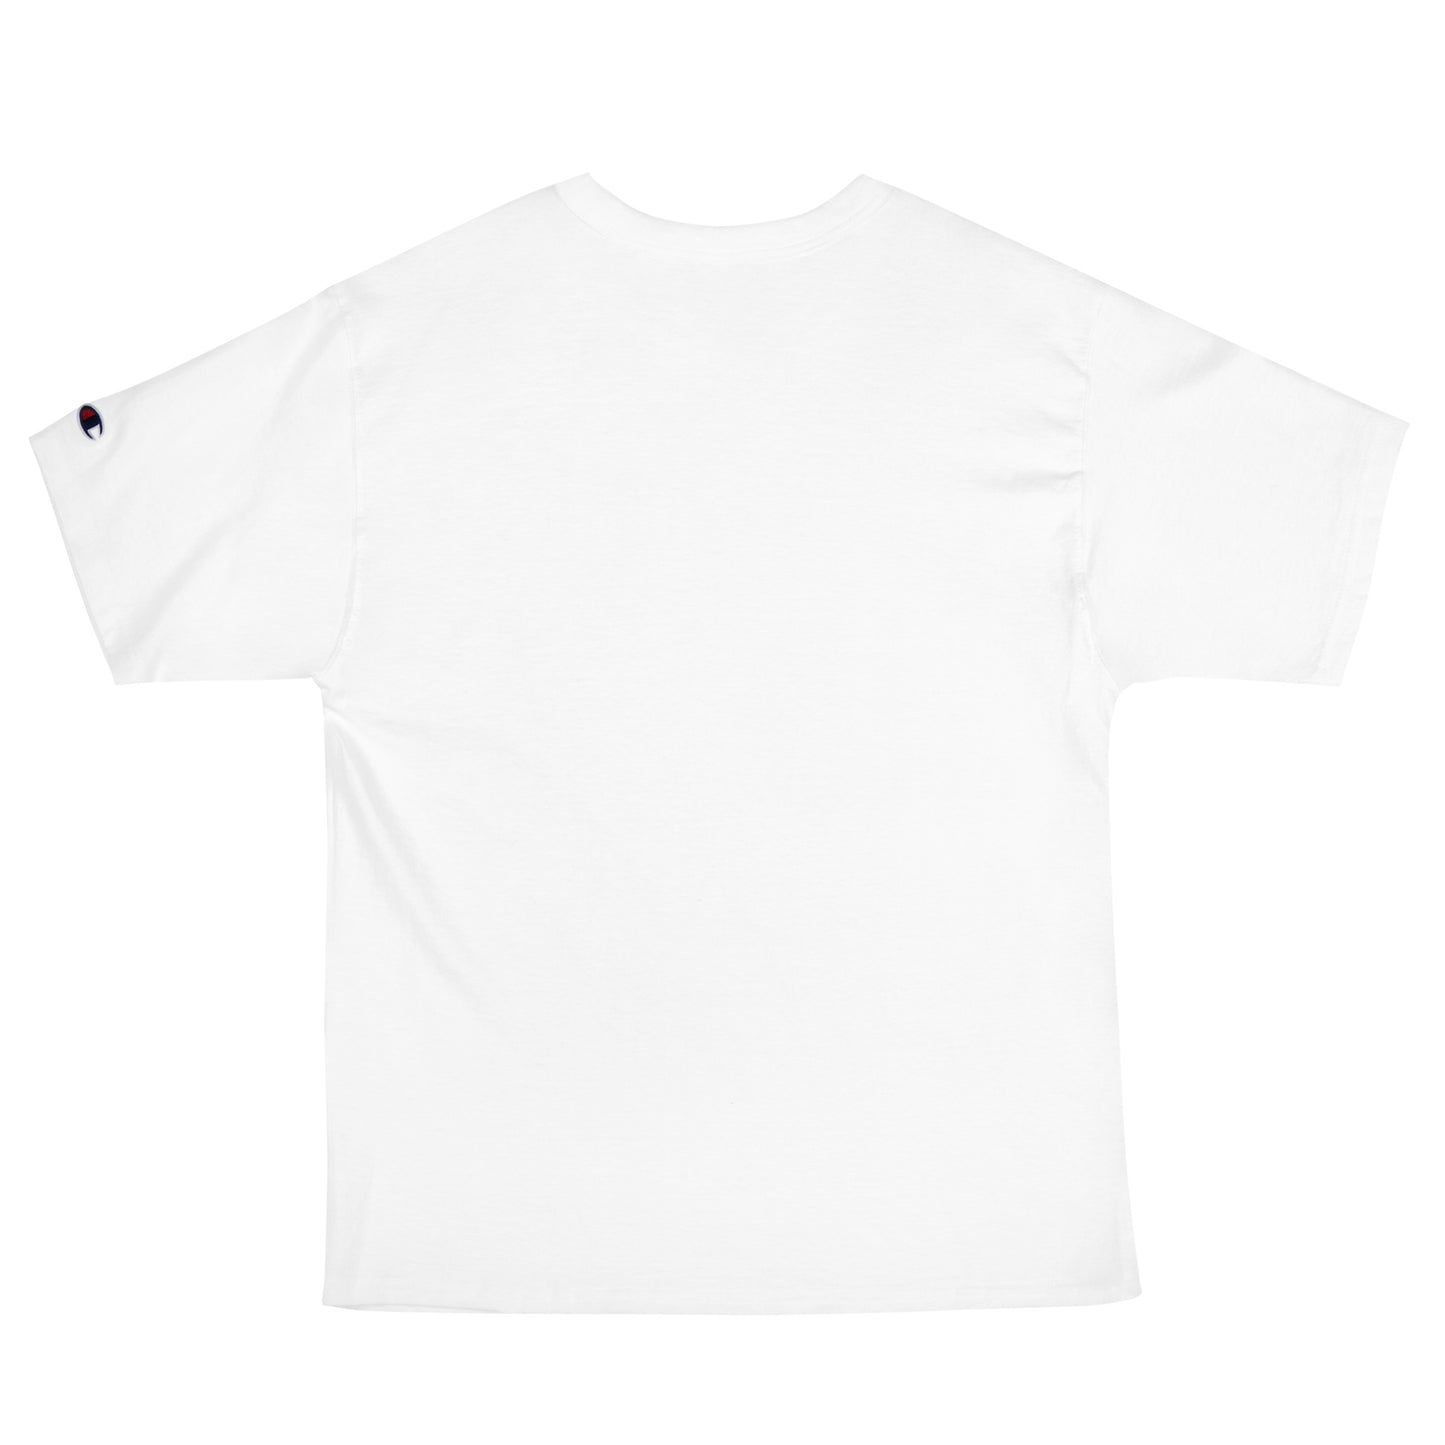 O150 - T-shirt/Oversize type/Champion (Pony : White)